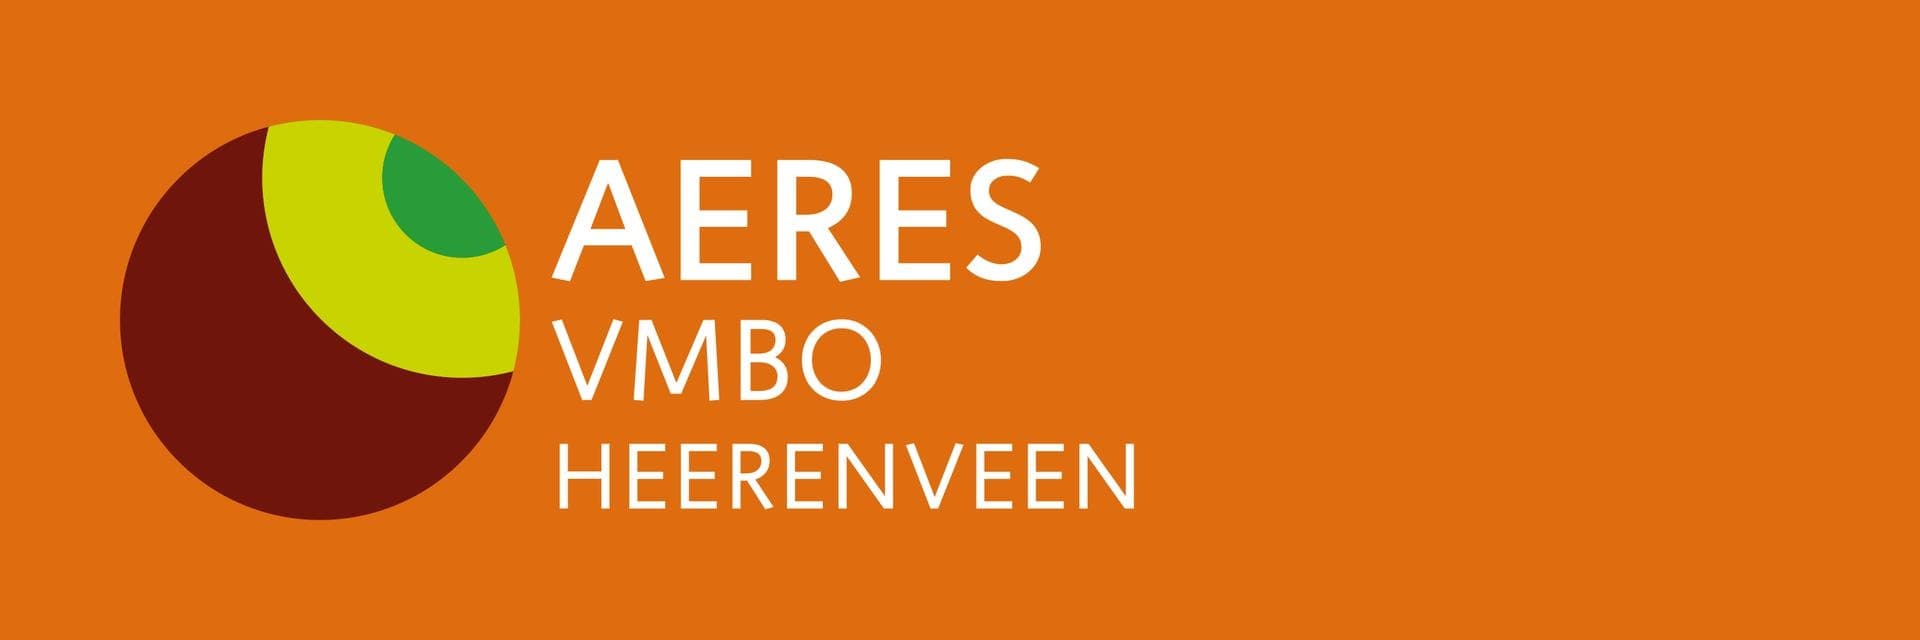 Aeres VMBO Heerenveen